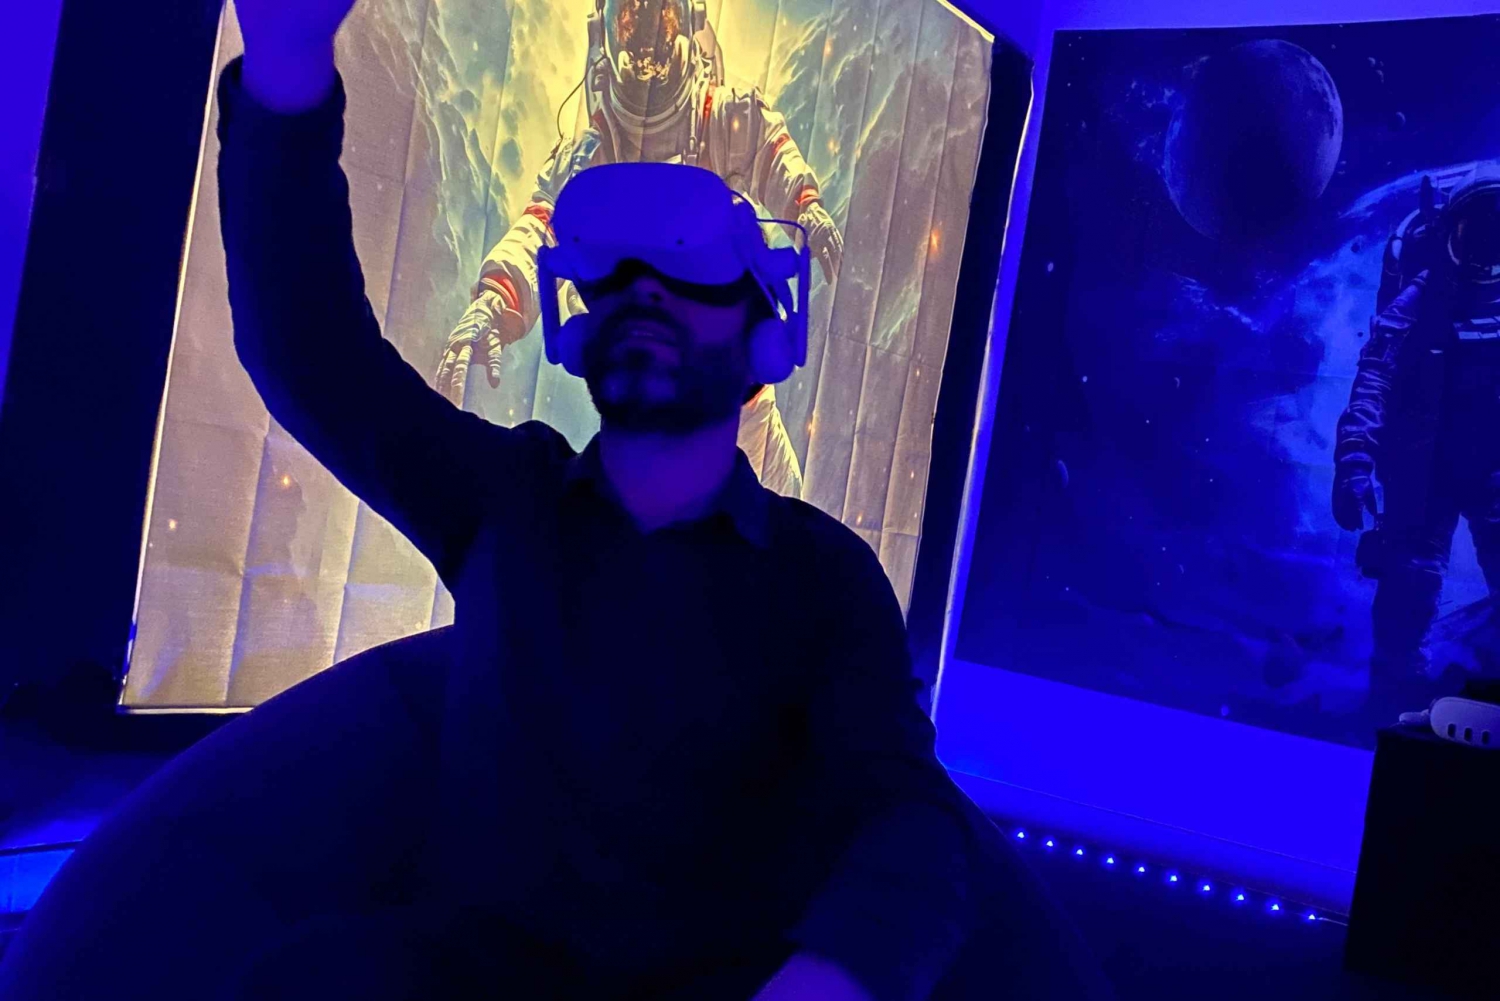 Bli astronaut - en unik VR-upplevelse endast i Barcelona